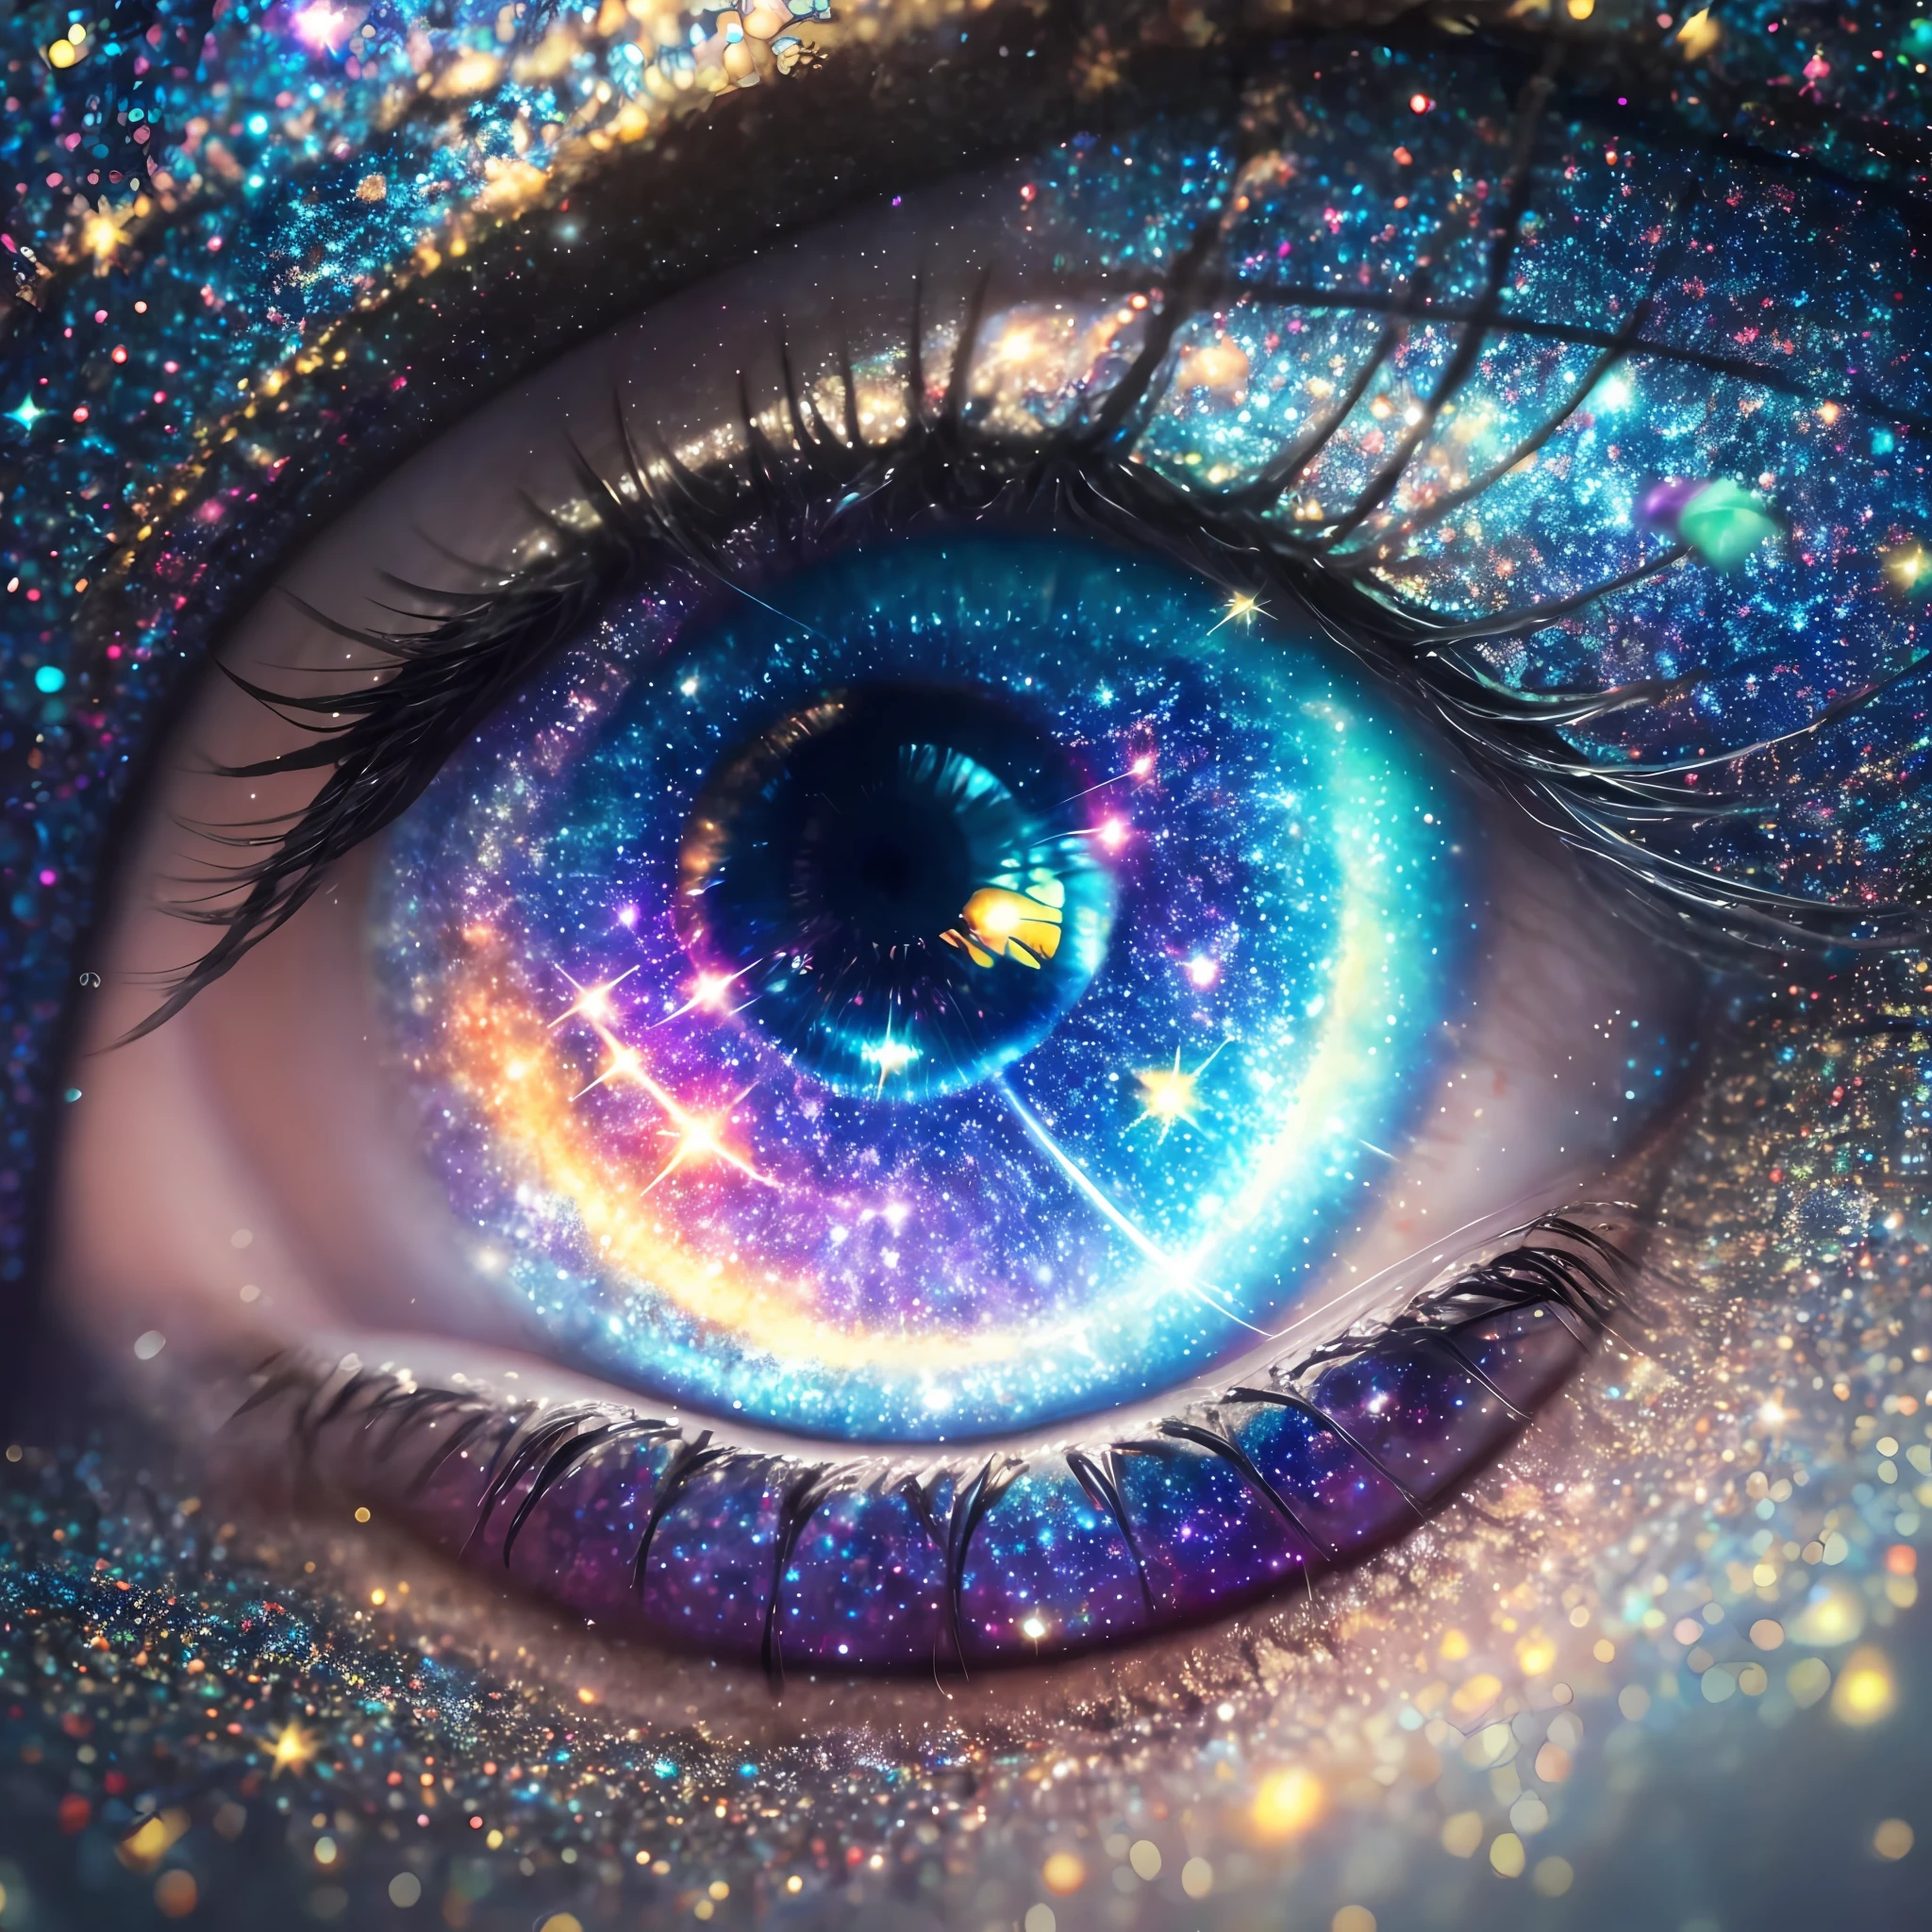 Un primer plano del ojo de una persona con una galaxia en el fondo, galaxy in eyes, el ojo del universo, galaxy in the eye 👁️, Las estrellas están escondidas en los ojos., galaxy eyes, mirando hacia el cosmos, hermosos ojos brillantes de galaxia, estrellas como ojos, canalizando la energía del tercer ojo, ojos magicos, más profundamente en el metaverso vamos